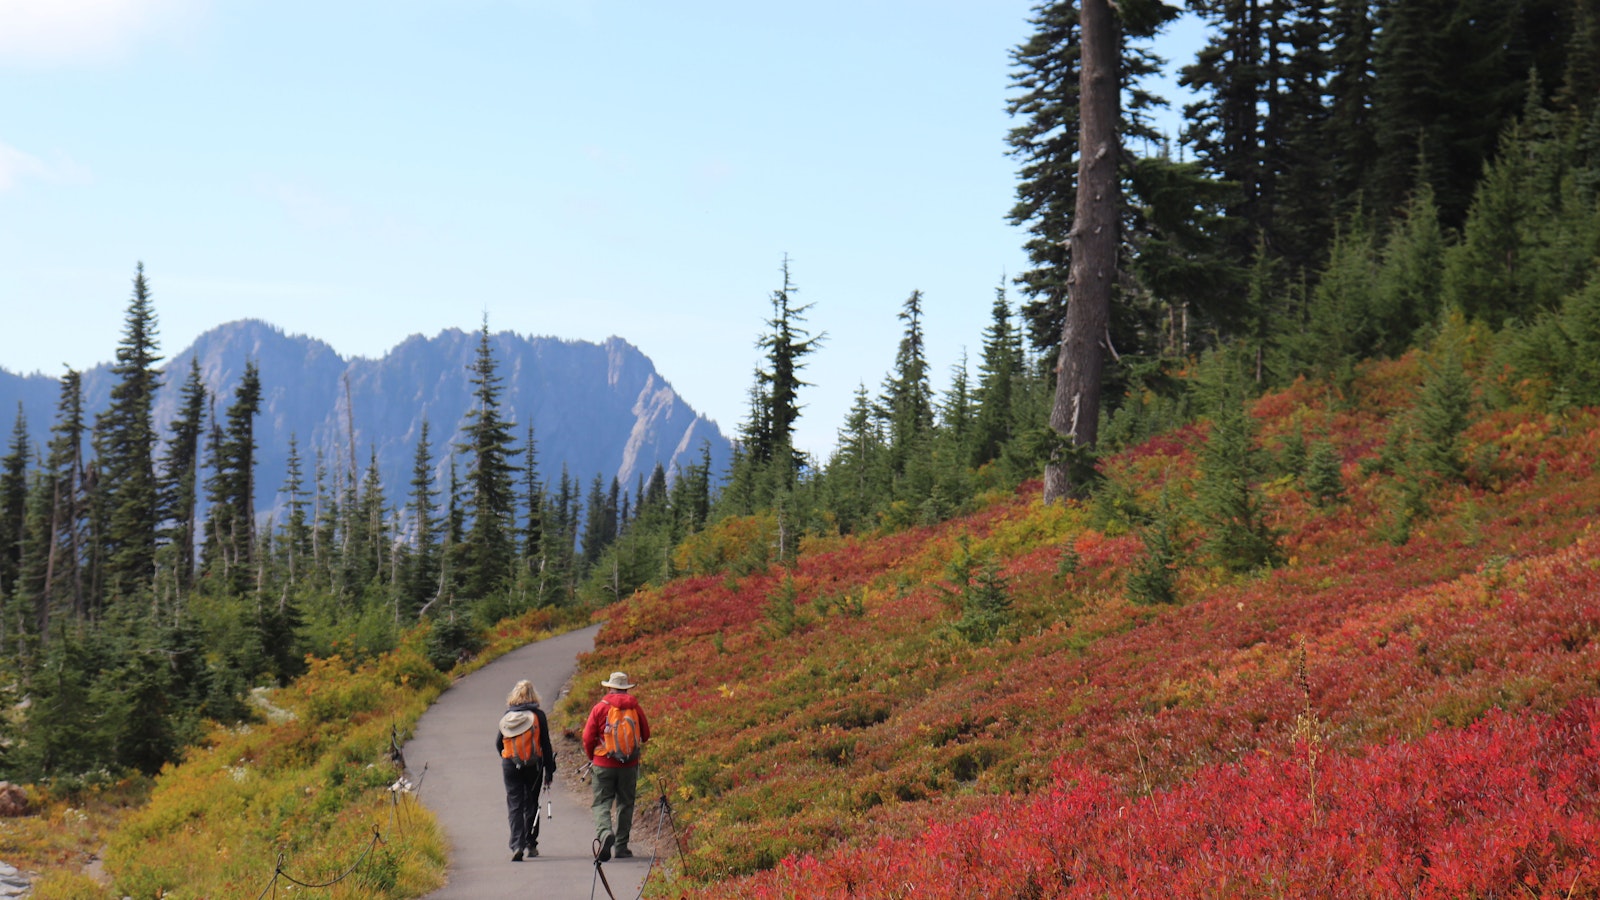 Hikers walks along a paved trail on a mountainside